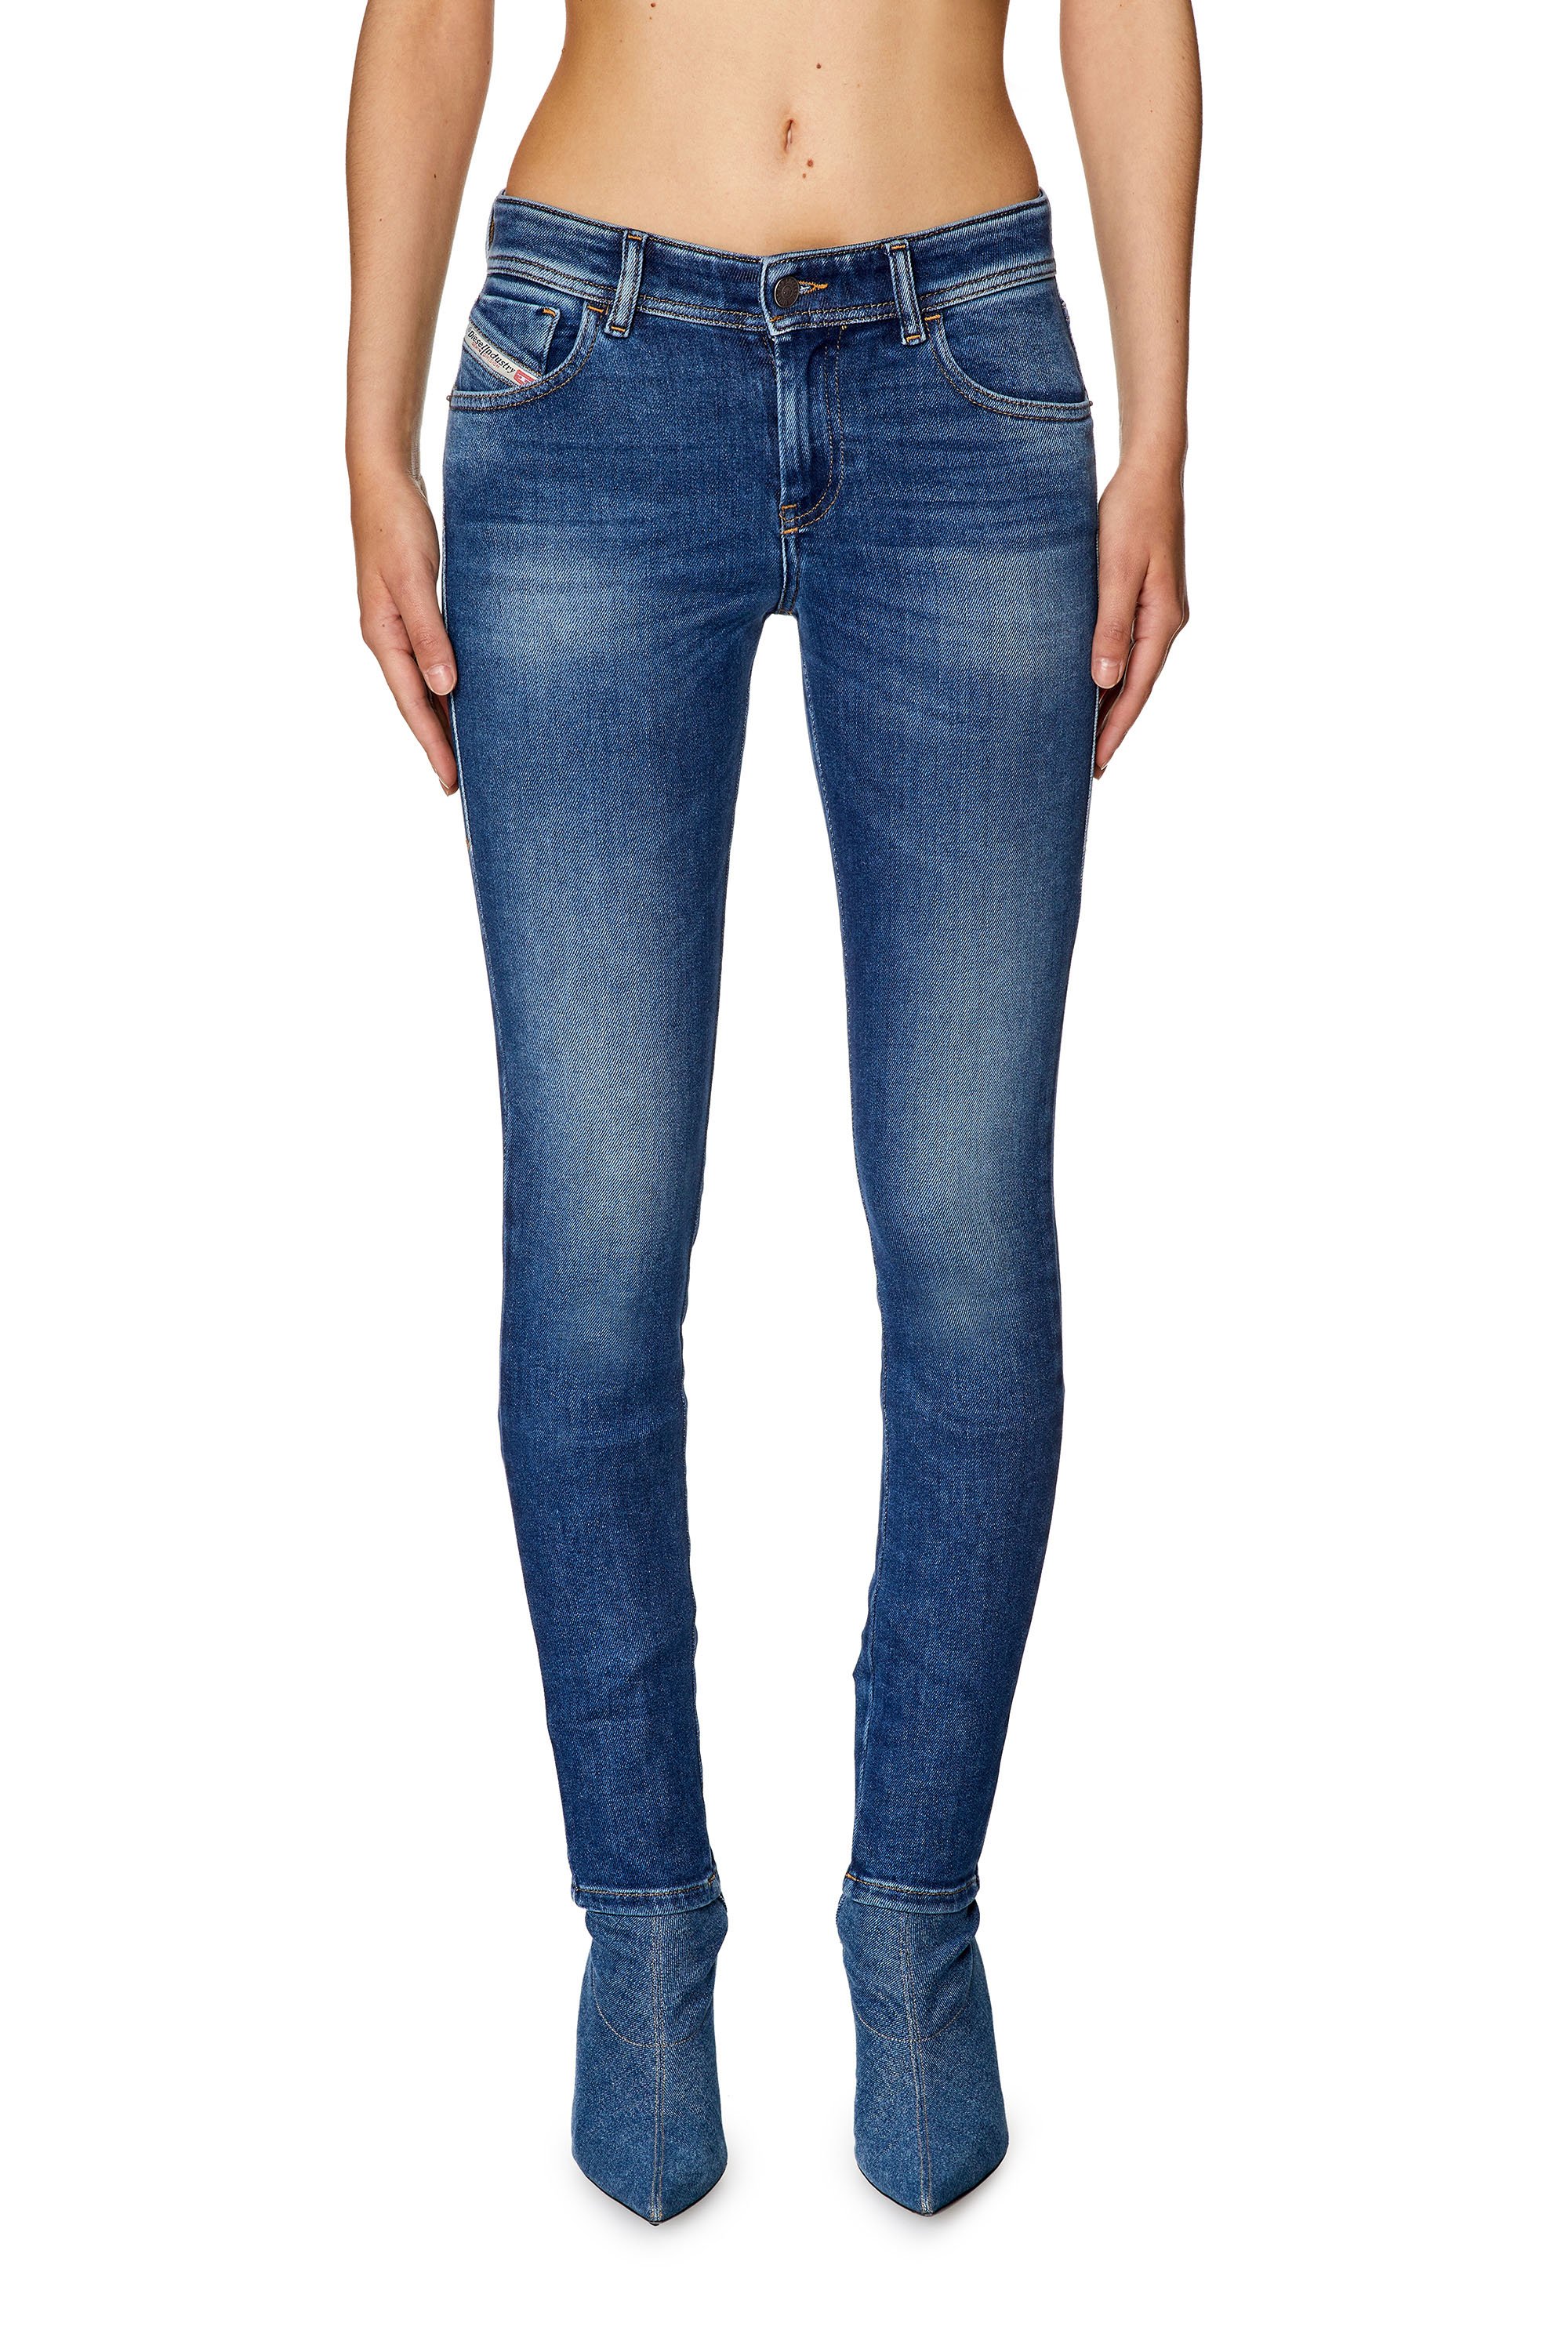 Diesel - Super skinny Jeans - 2017 Slandy - Jeans - Woman - Blue